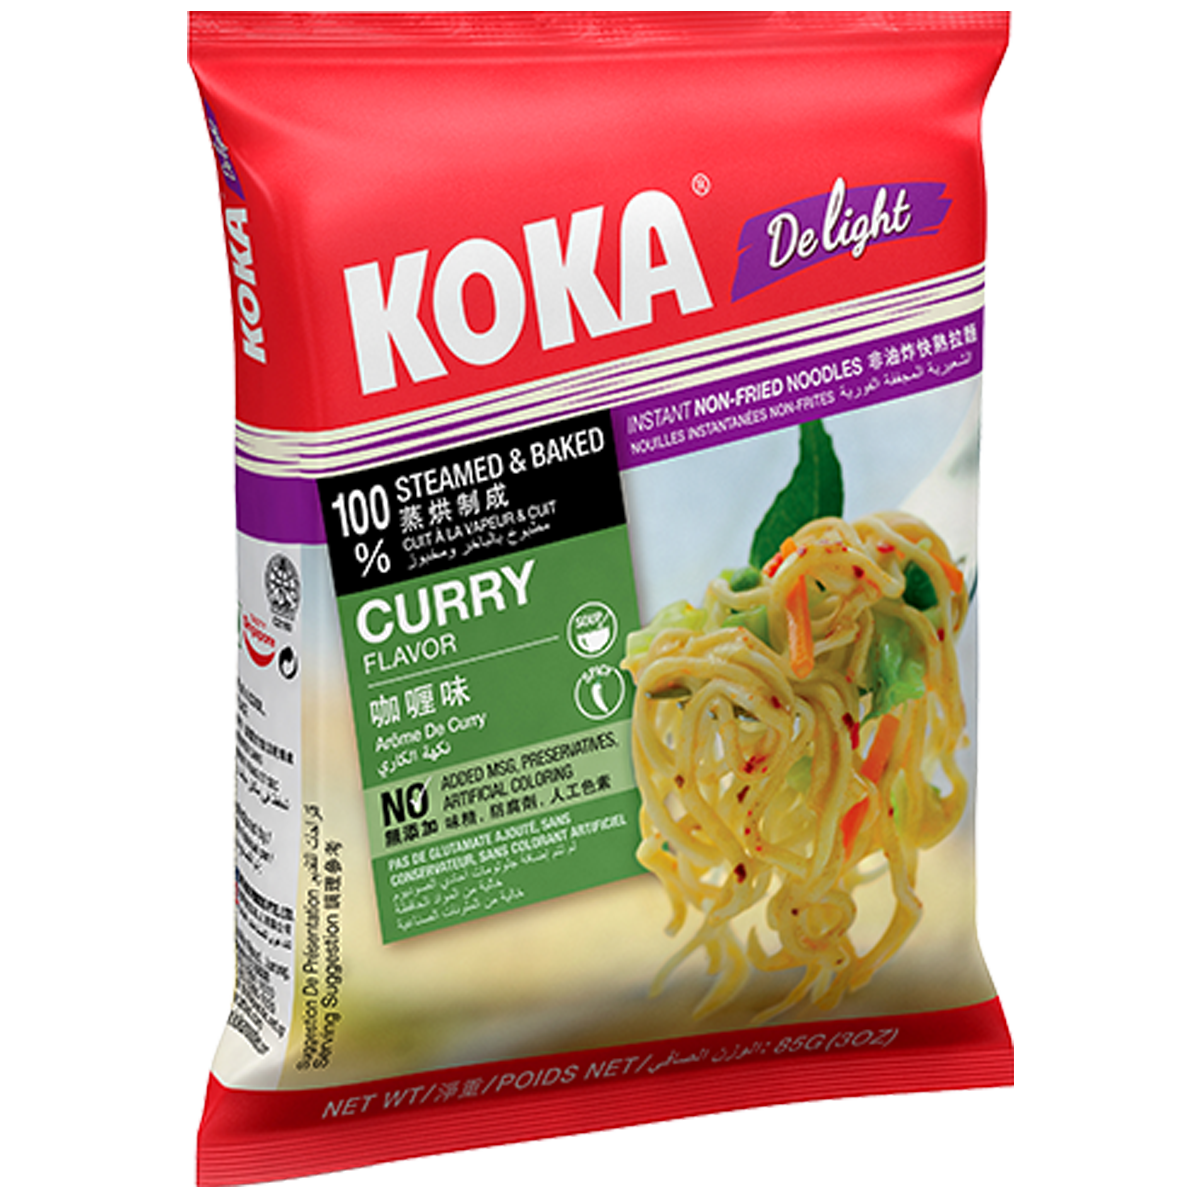 Koka Delight Curry 85g